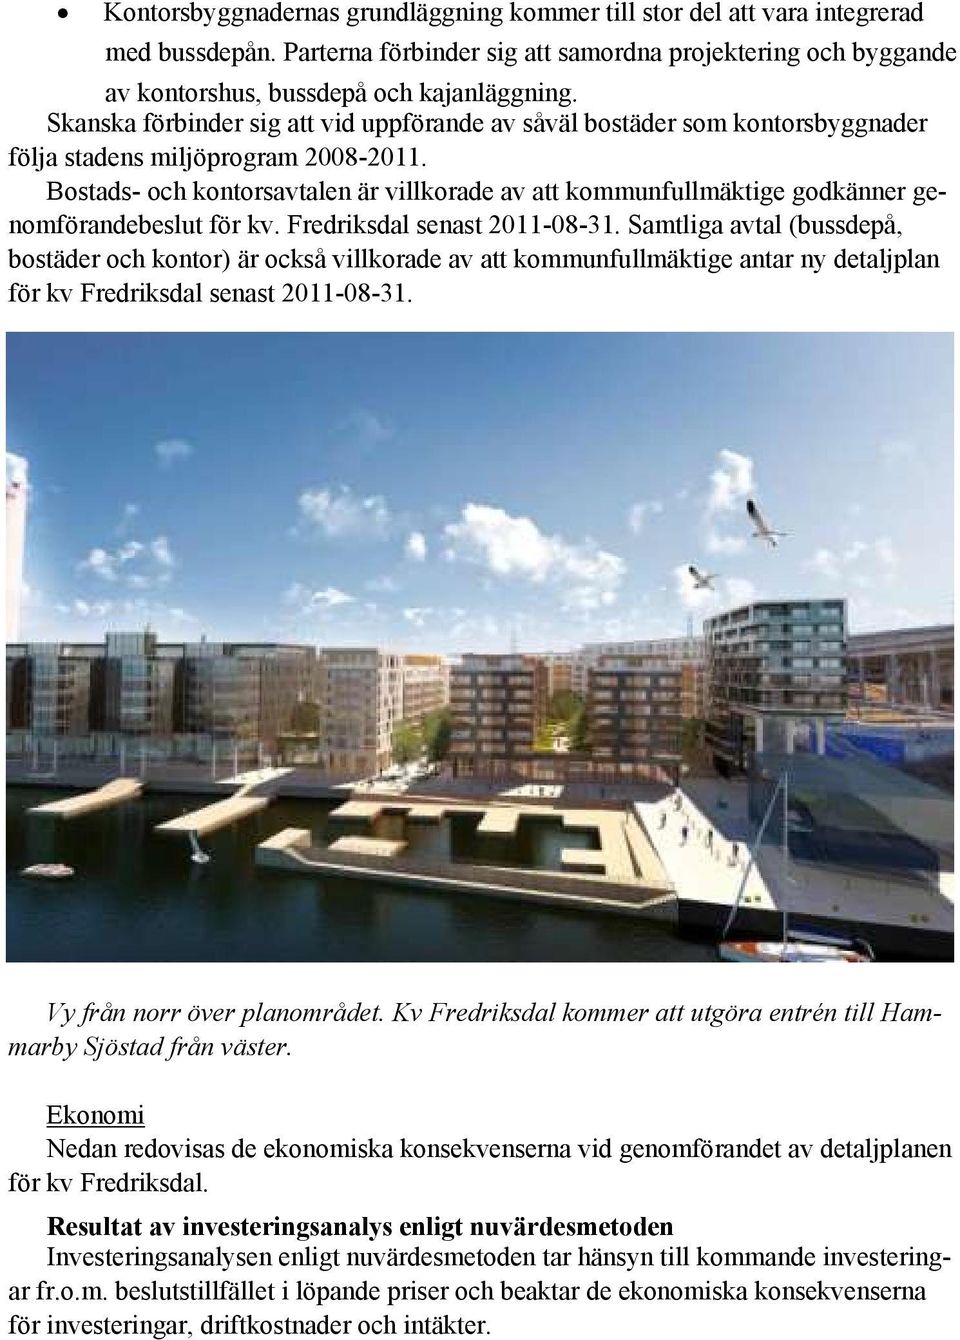 Bostads- och kontorsavtalen är villkorade av att kommunfullmäktige godkänner genomförandebeslut för kv. Fredriksdal senast 2011-08-31.